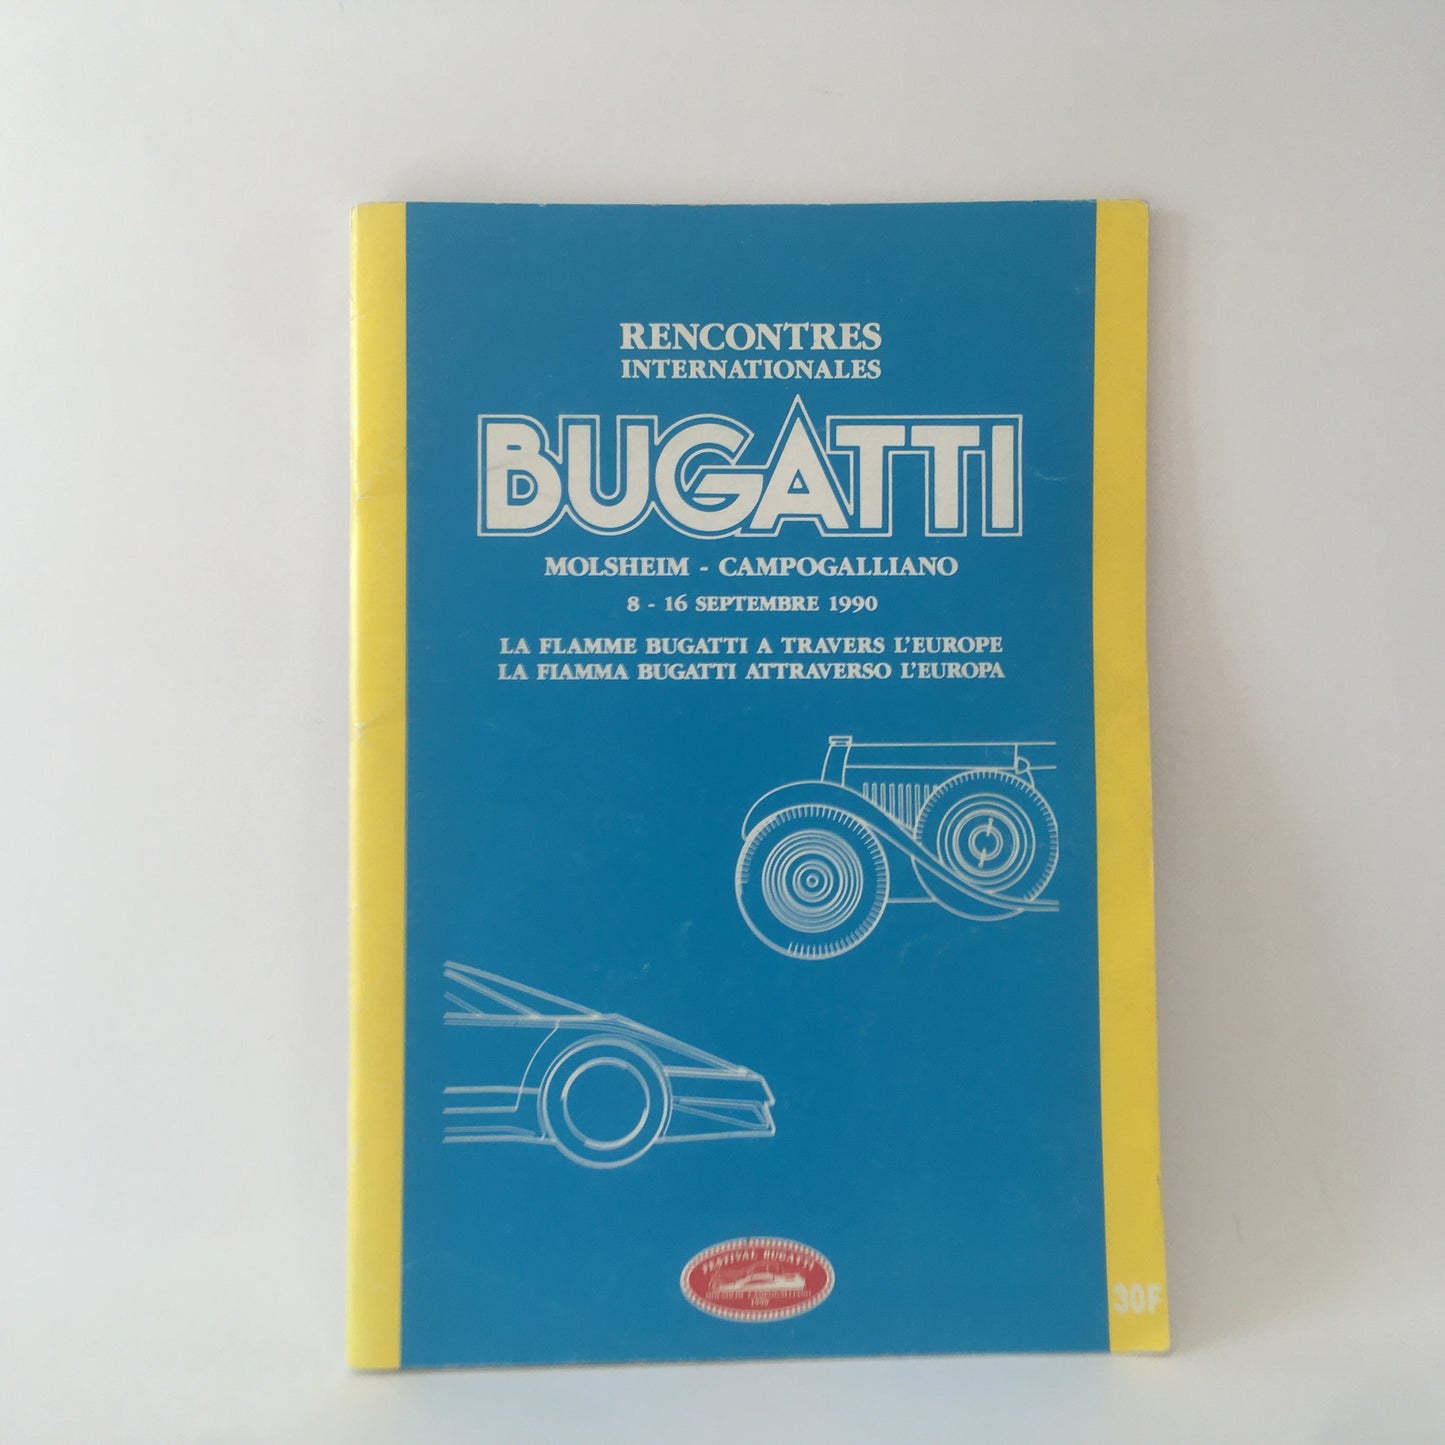 Bugatti, Brochure Rencontres Internationales Bugatti Molsheim - Campogalliano 8 - 16 September 1990